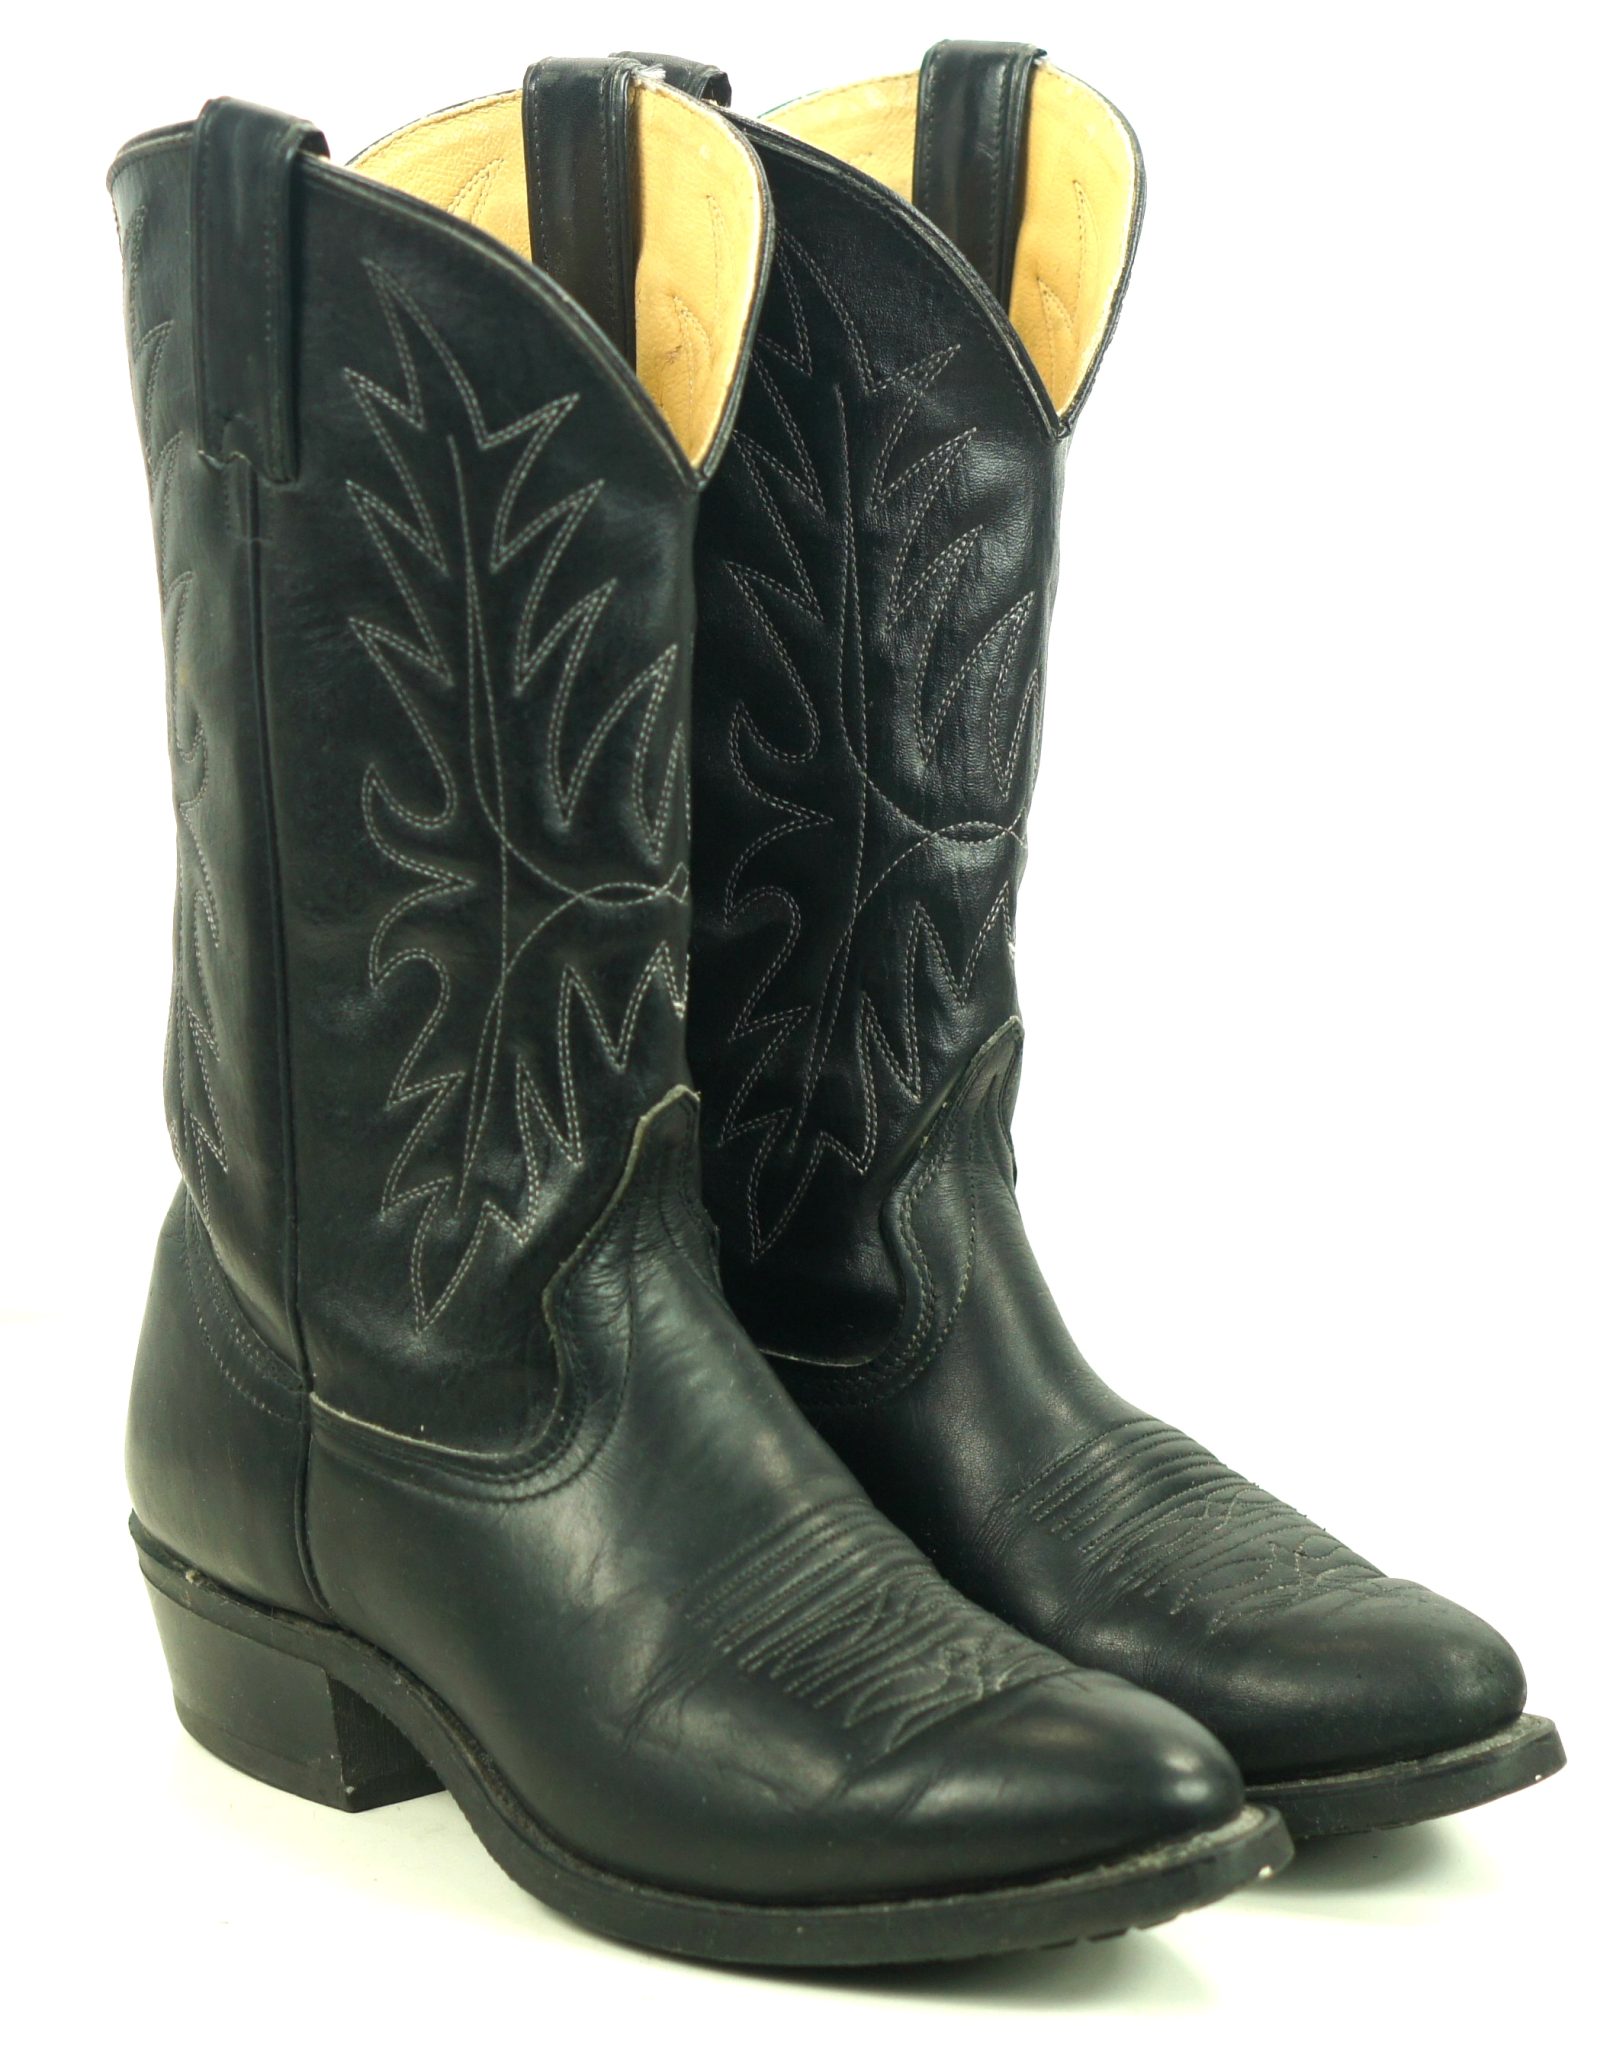 Wrangler Black Cowboy Western Work Boots Oil Resistant Vintage US Made Mens (10)